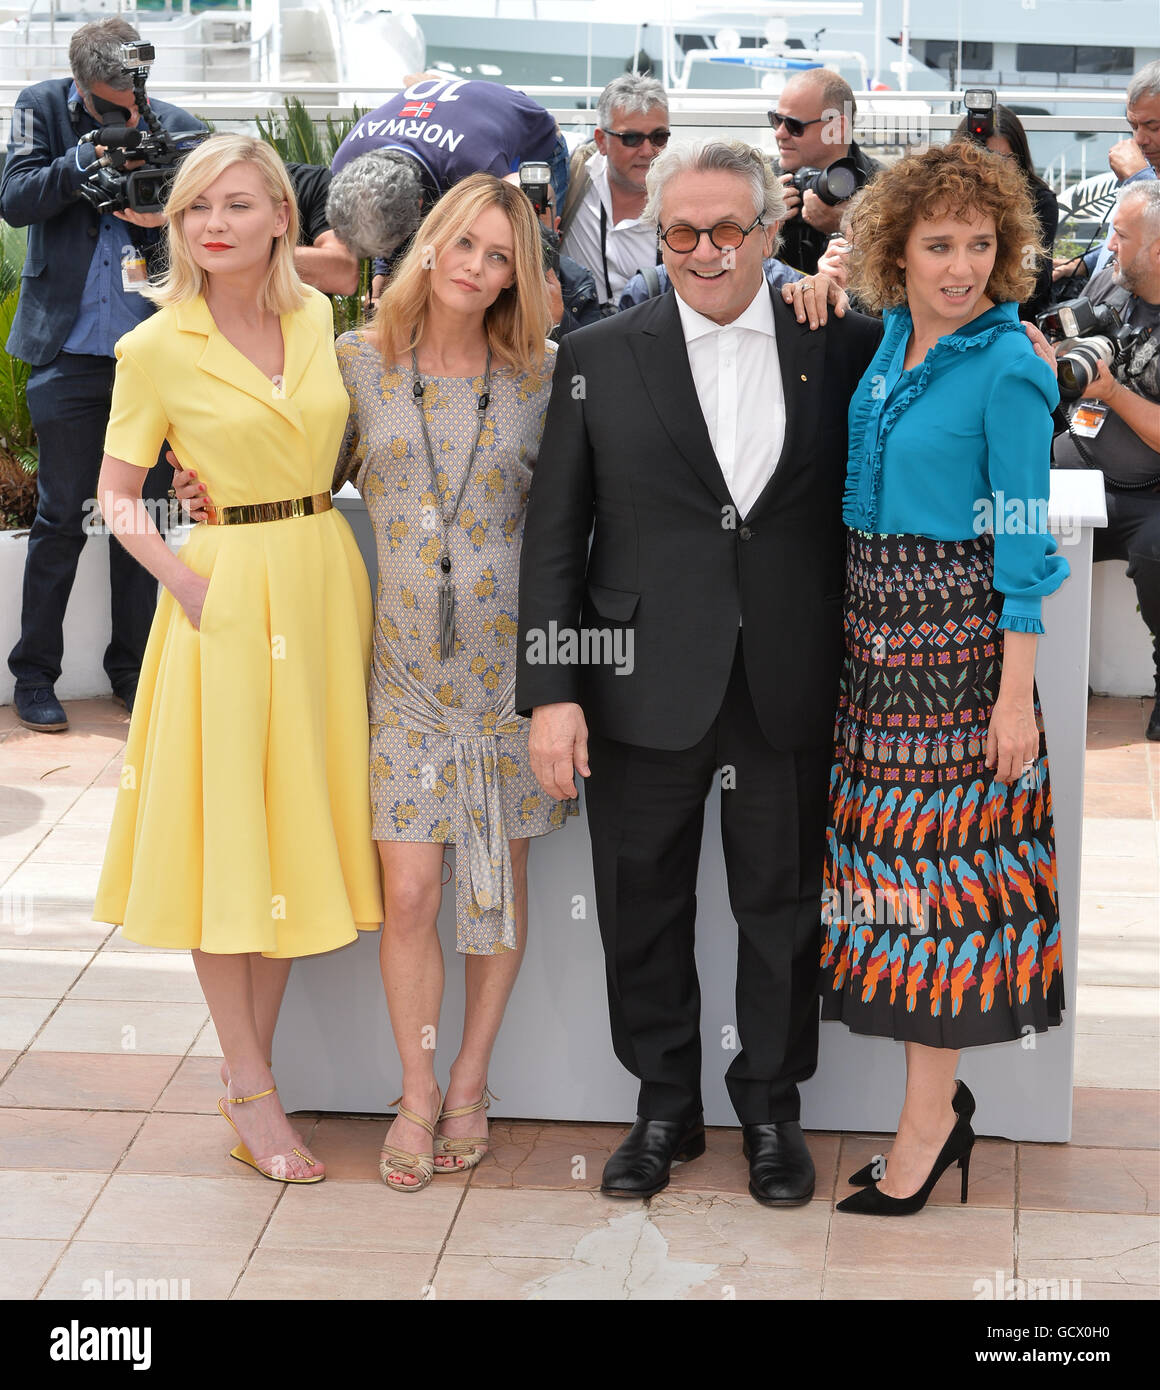 CANNES, FR - 11. Mai 2016: Schauspielerinnen Kirsten Dunst, Vanessa Paradis, Valeria Golino mit Regisseur George Miller bei der Fototermin für die Jury auf dem 69. Festival de Cannes. Stockfoto